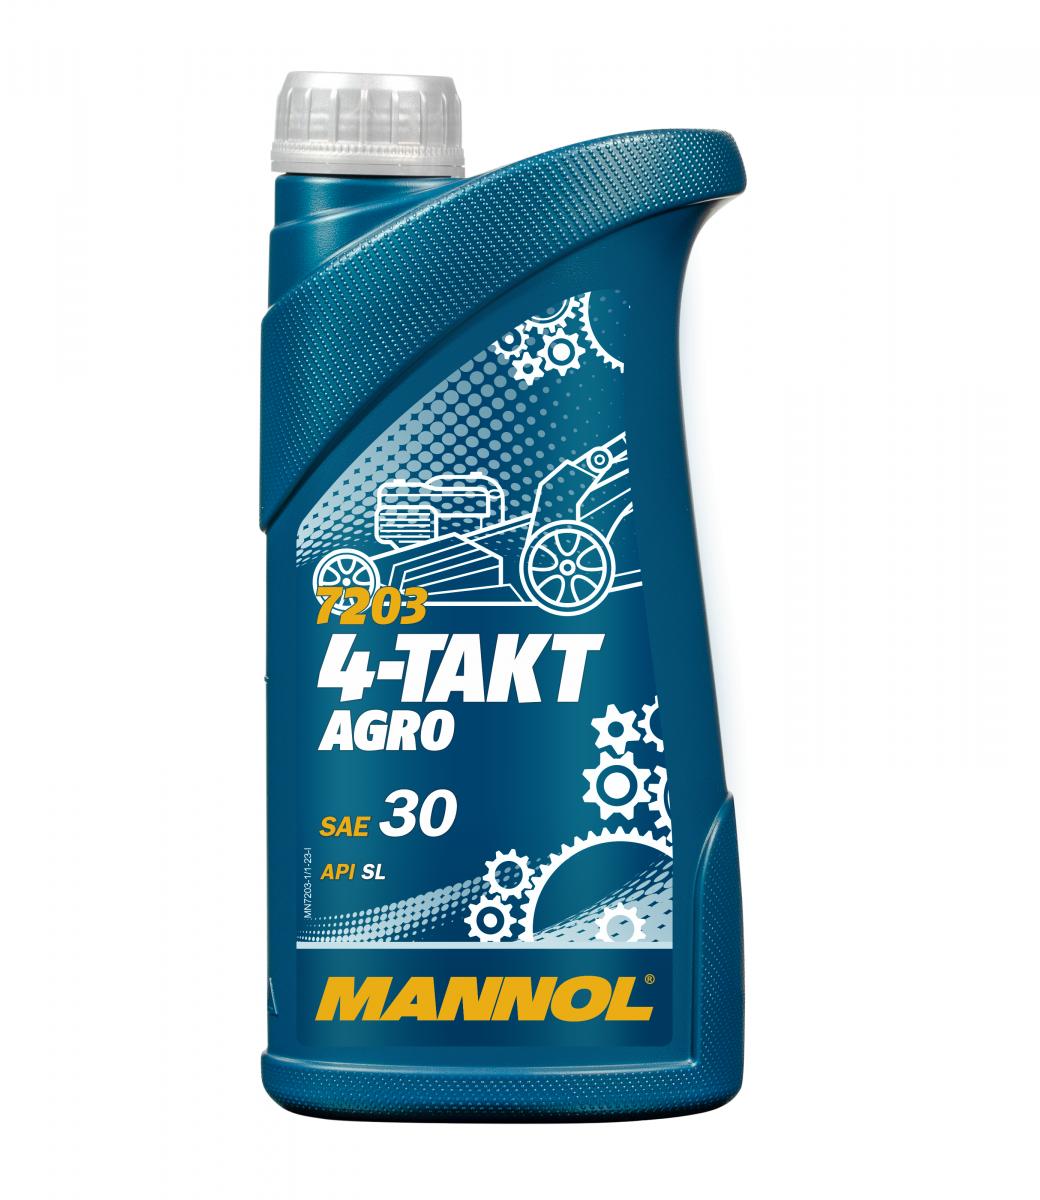 10 Liter (10x1) MANNOL 4-Takt Agro 7203 SAE 30 API SL Motoröl für Gartengeräte 